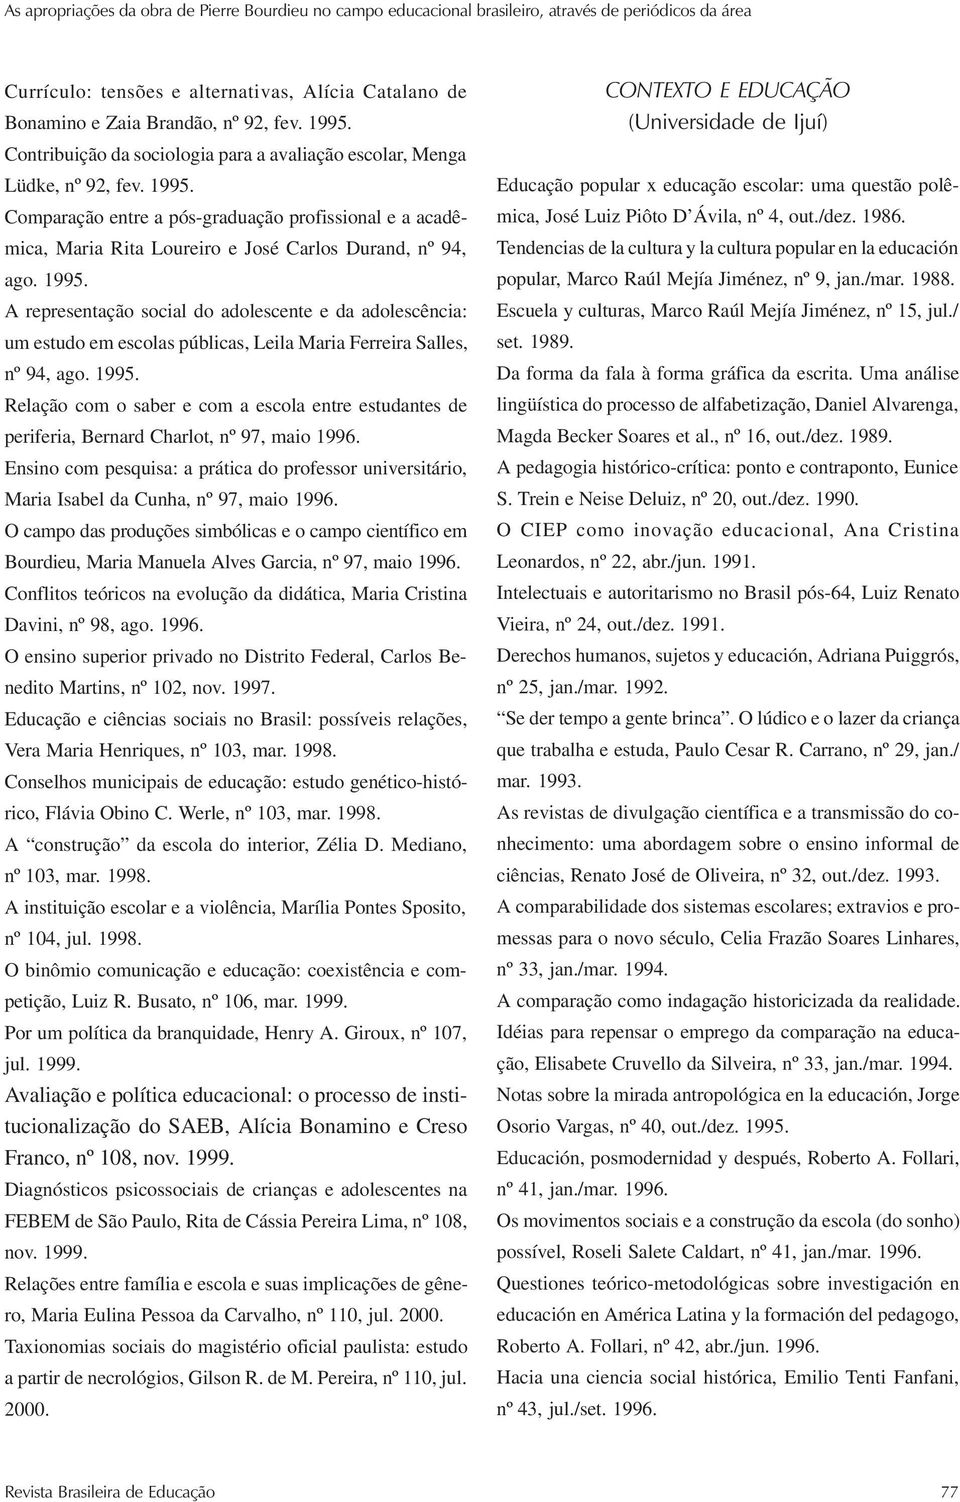 1995. A representação social do adolescente e da adolescência: um estudo em escolas públicas, Leila Maria Ferreira Salles, nº 94, ago. 1995.